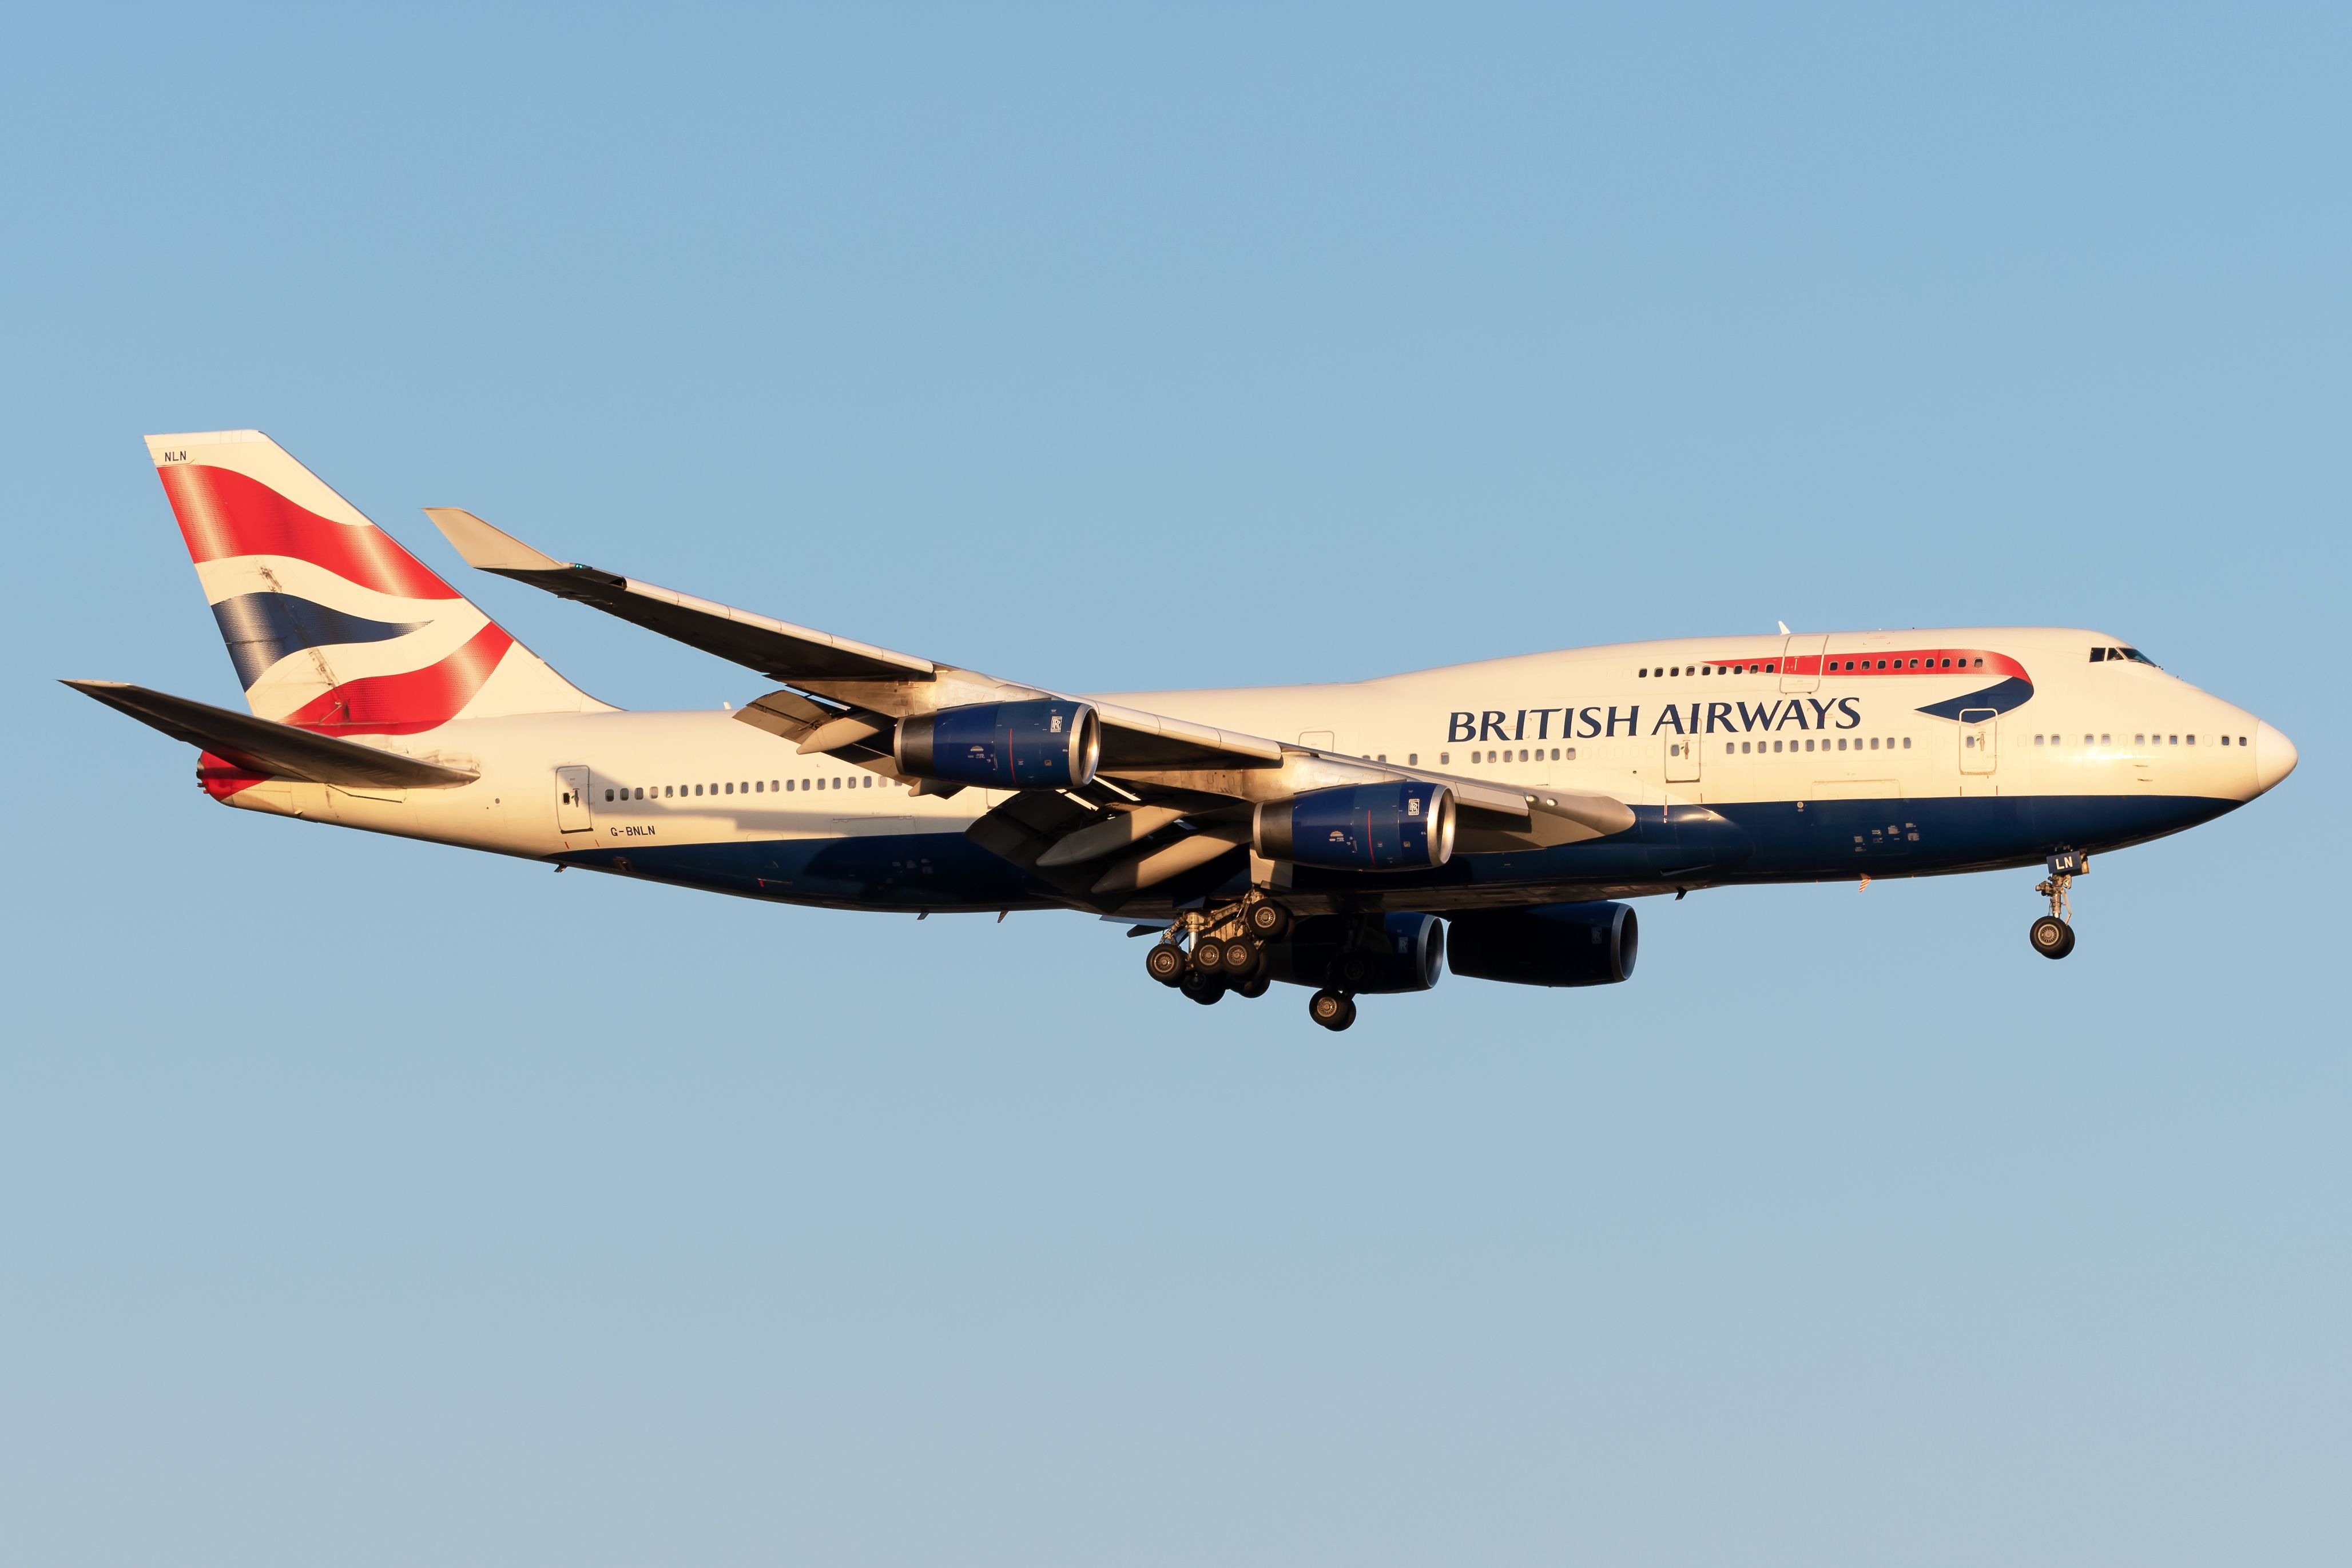 British Airways Boeing 747-436 in flight